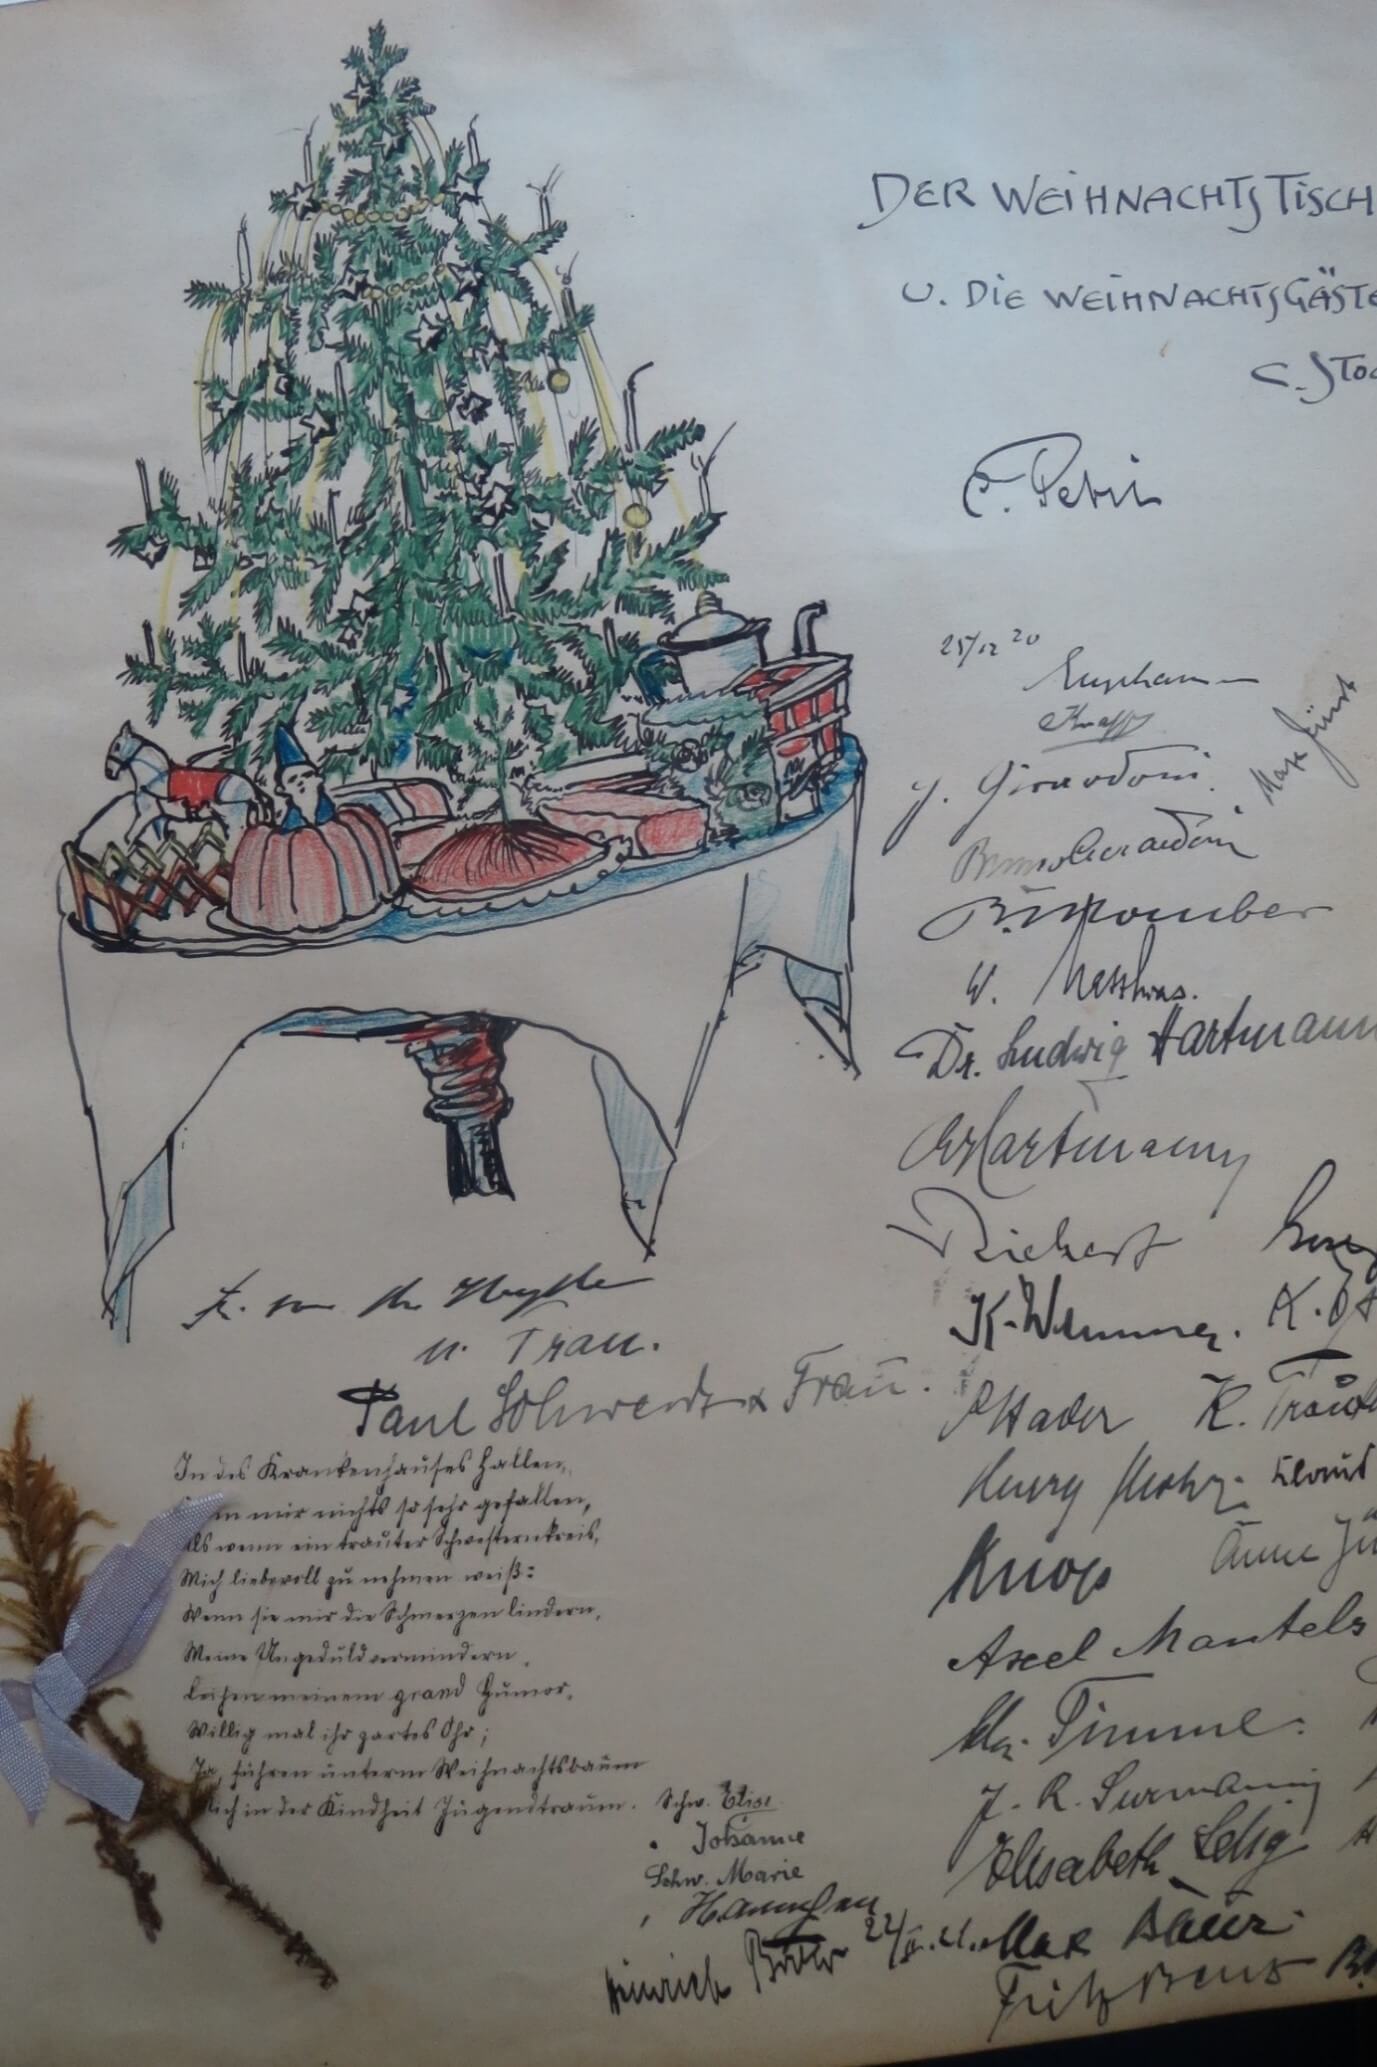  Weihnachtsfeier 1920 im Krankenhaus mit 37 Gästen; Zeichnung von Carl Stock